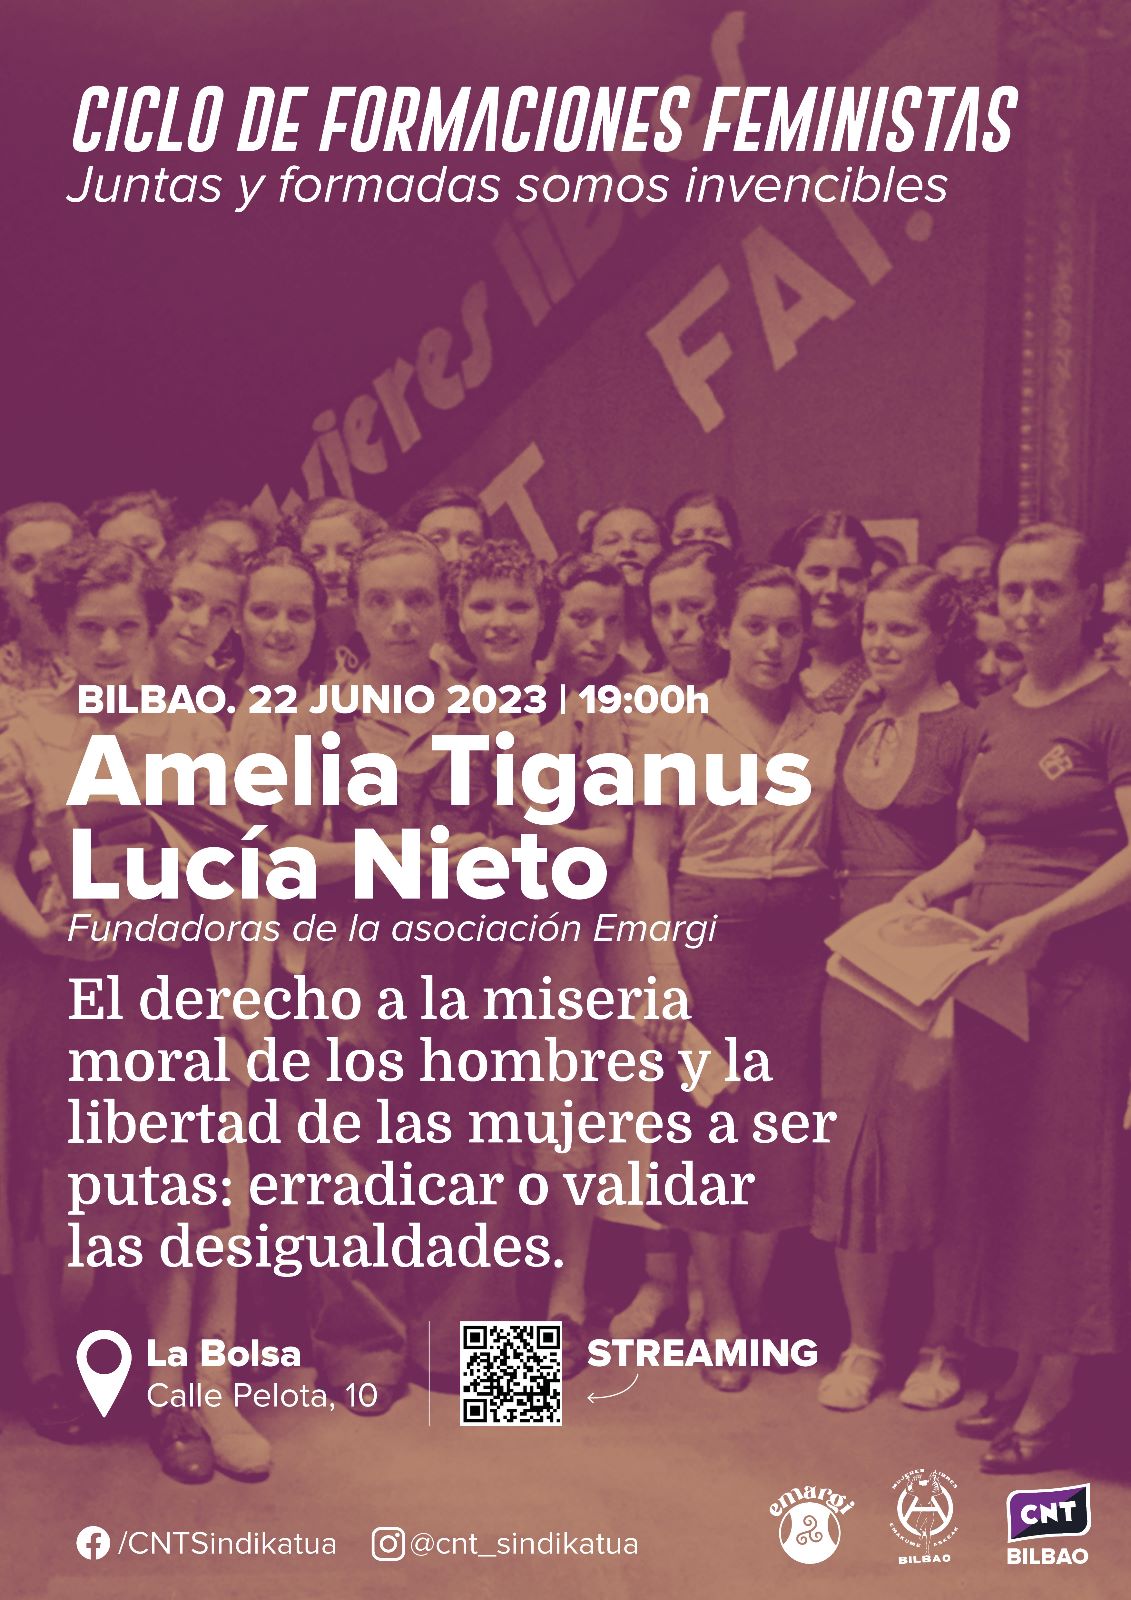 [Ciclo de formaciones feministas] Charla de Amelia Tiganus y Lucía Nieto – Retransmisión online en CNT Zaragoza 22 junio 19:00 horas.